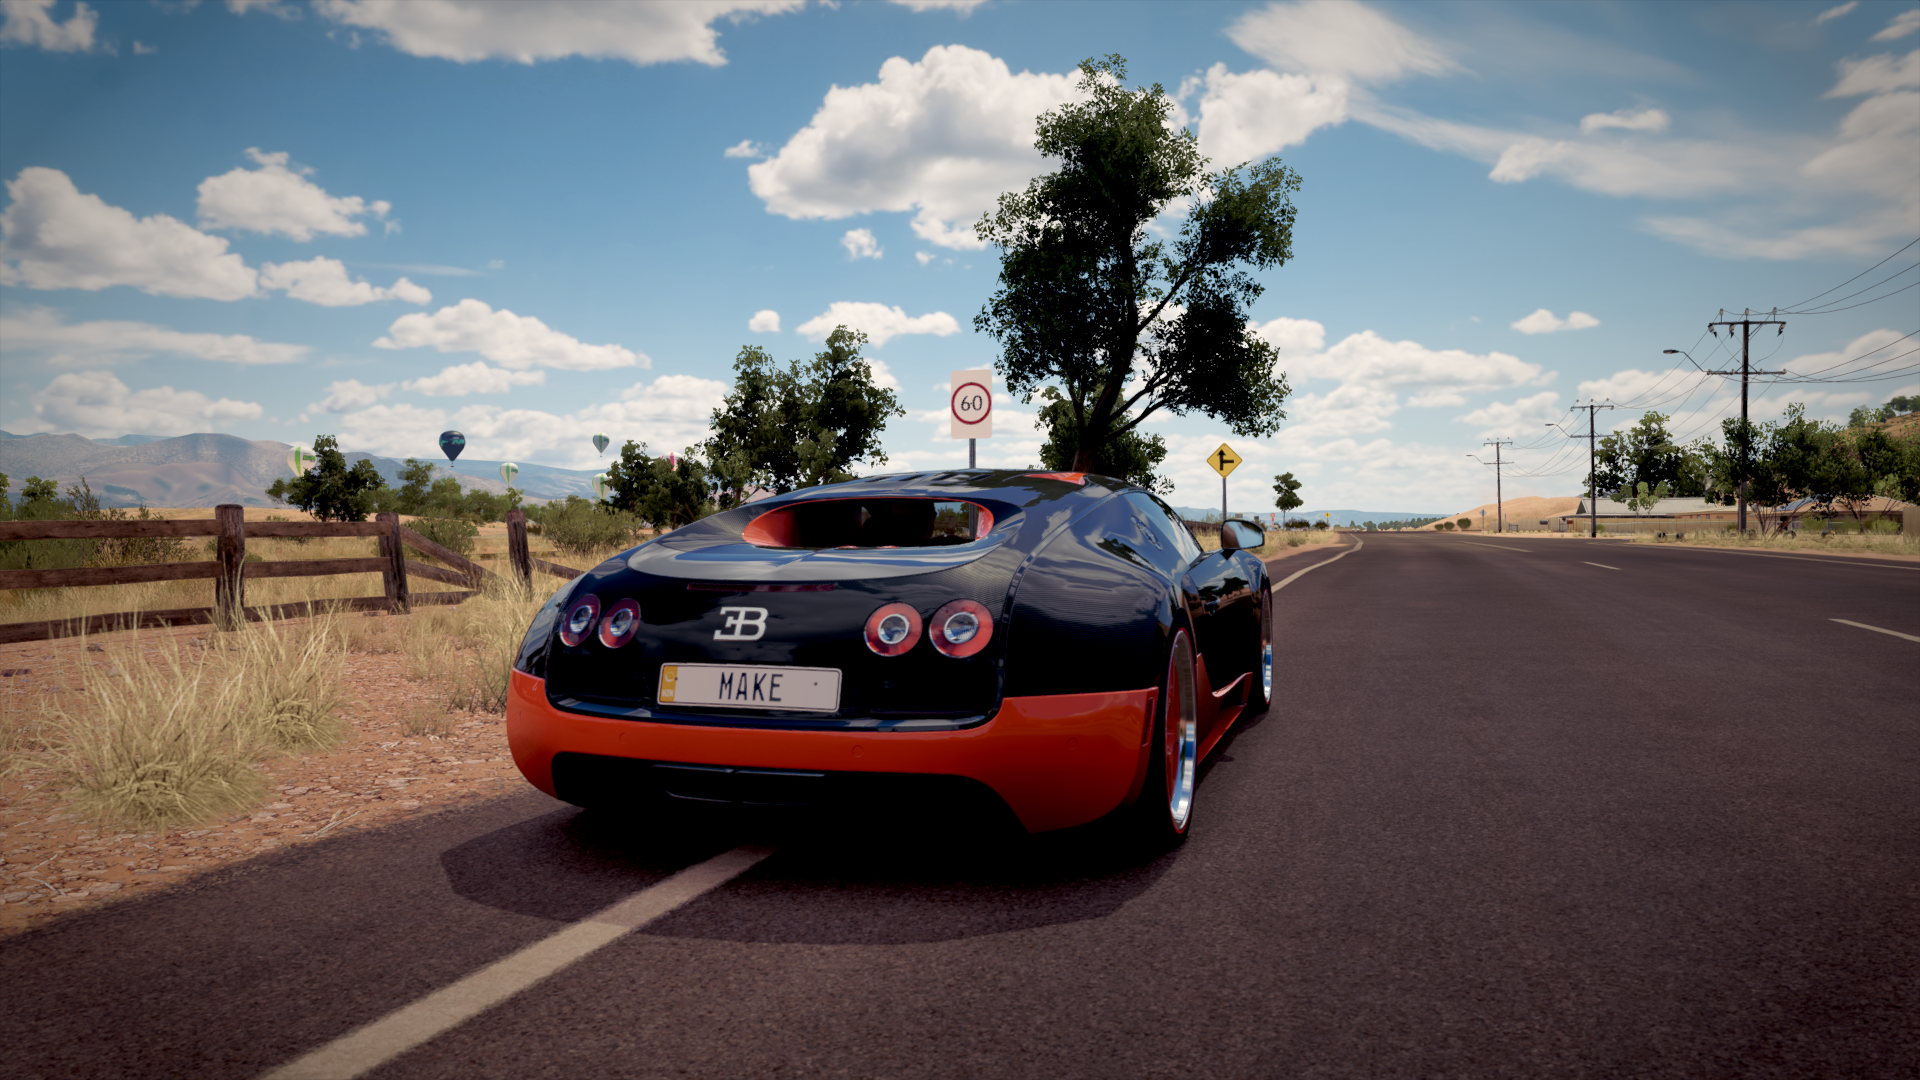 Bugatti Veyron Forza Horizon 3 Road 1920x1080